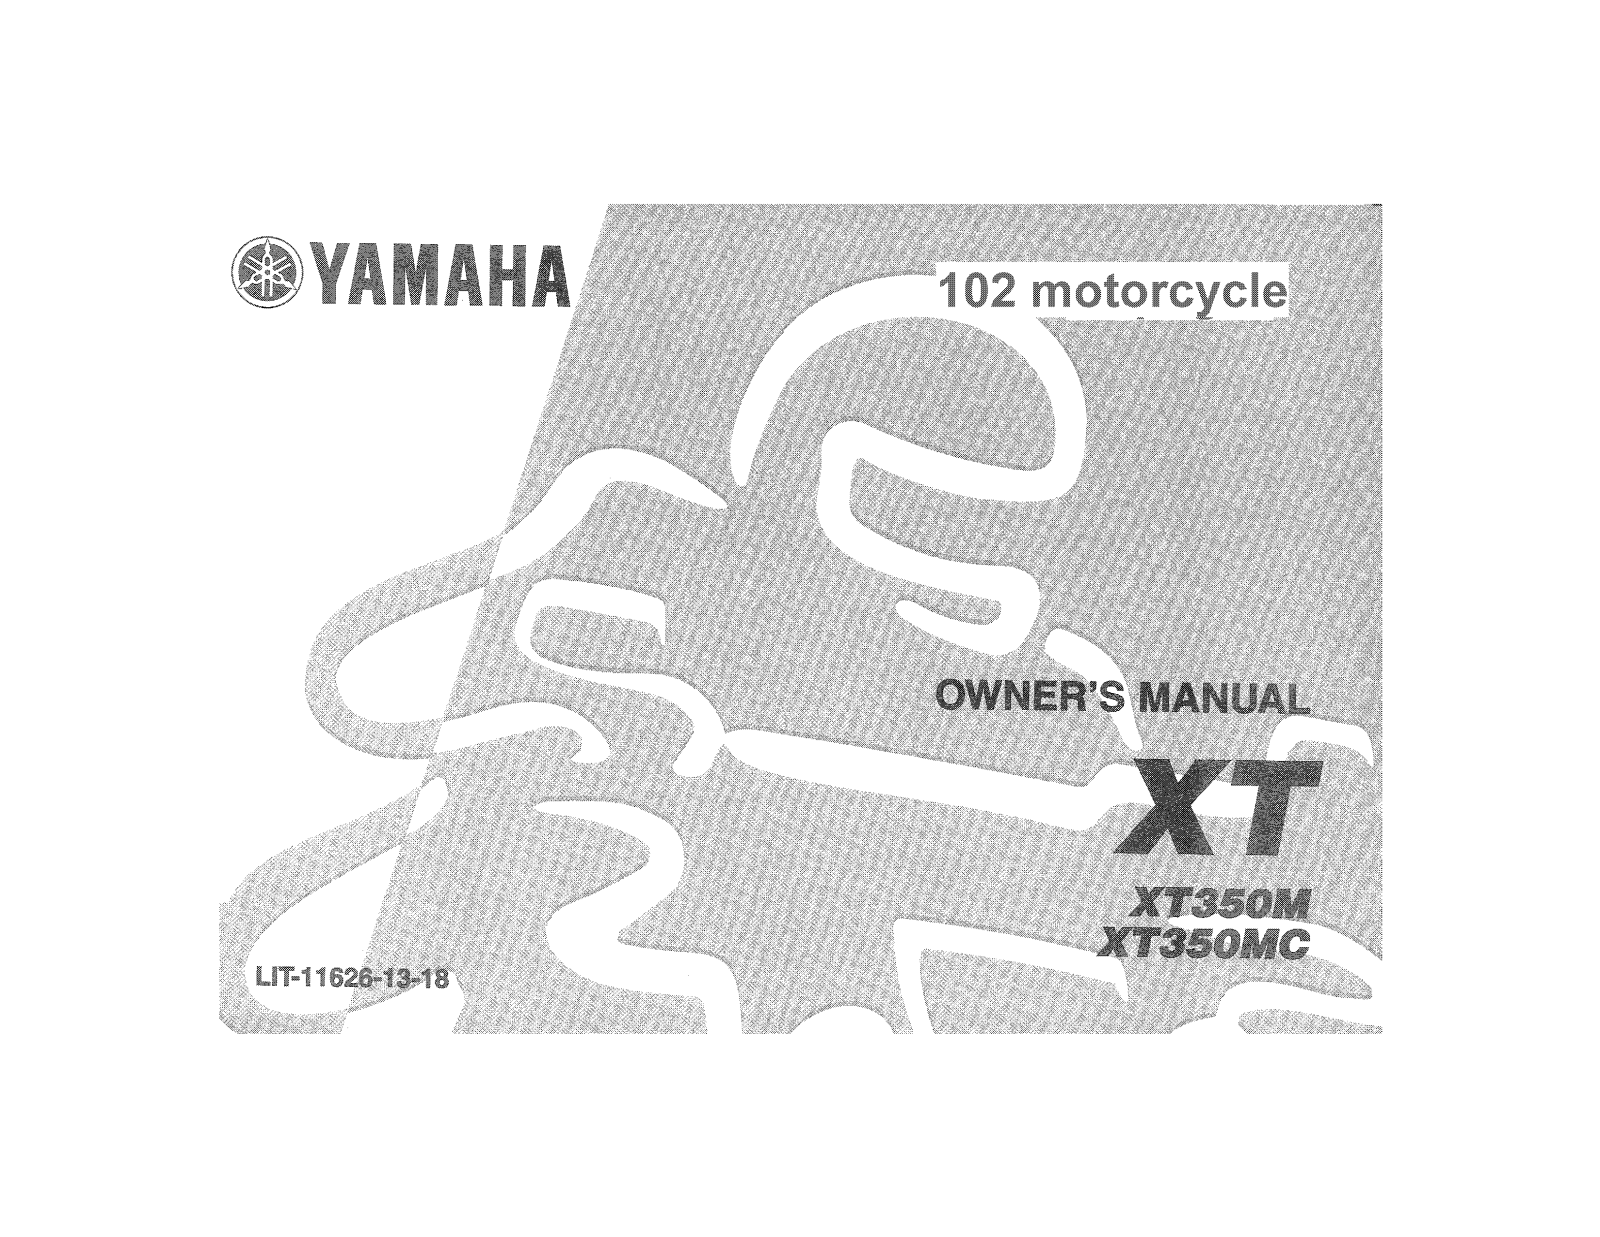 Yamaha XT350 Manual